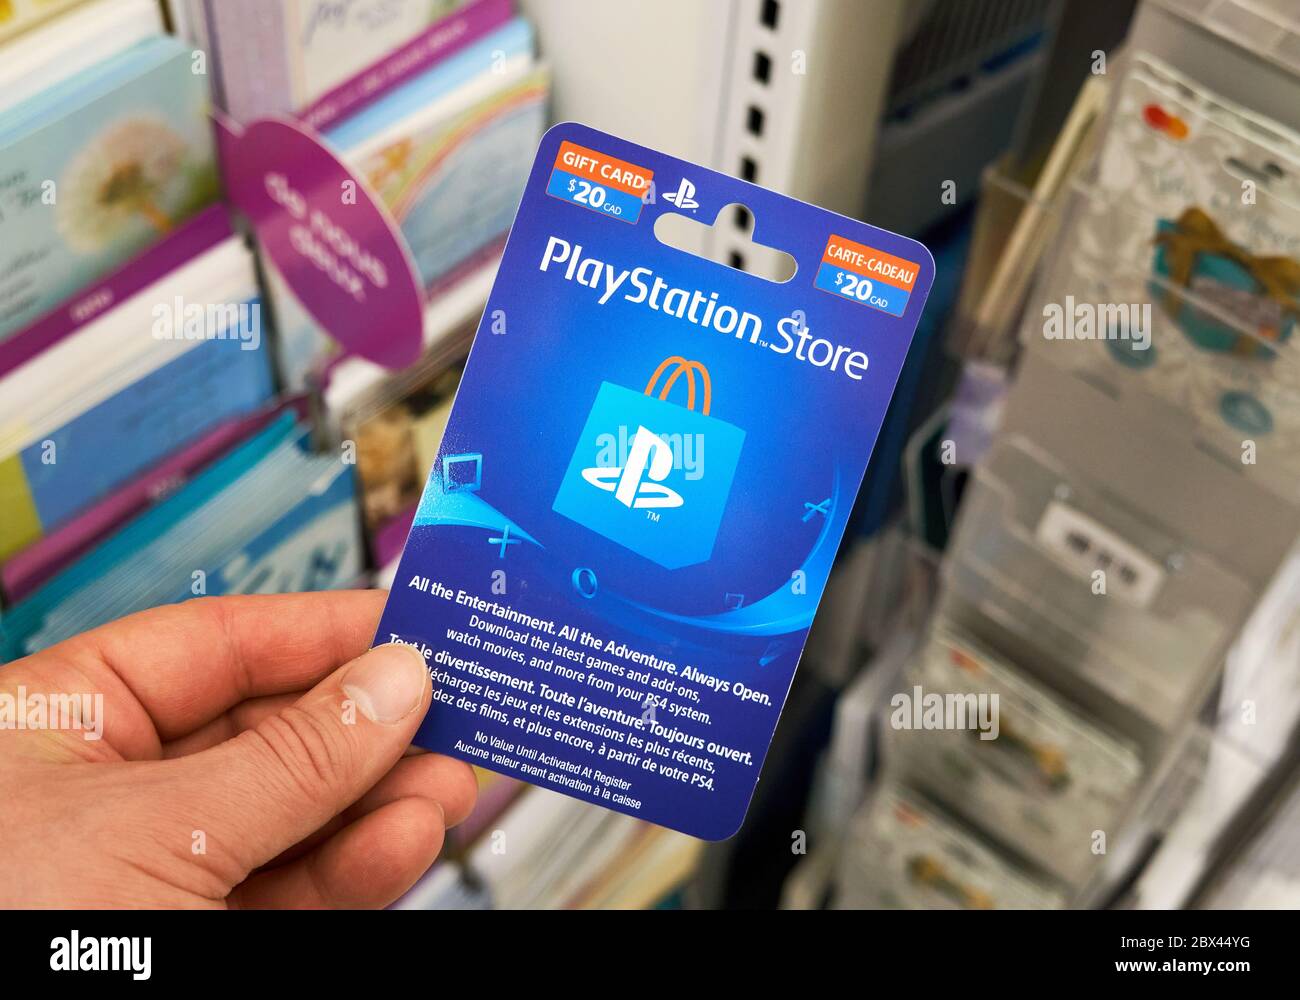 Montreal, Canadá - 03 de mayo de 2020: Tarjeta de regalo de PlayStation en  una mano sobre un stand con tarjetas de regalo. PlayStation es una popular  consola de videojuegos desarrollada b